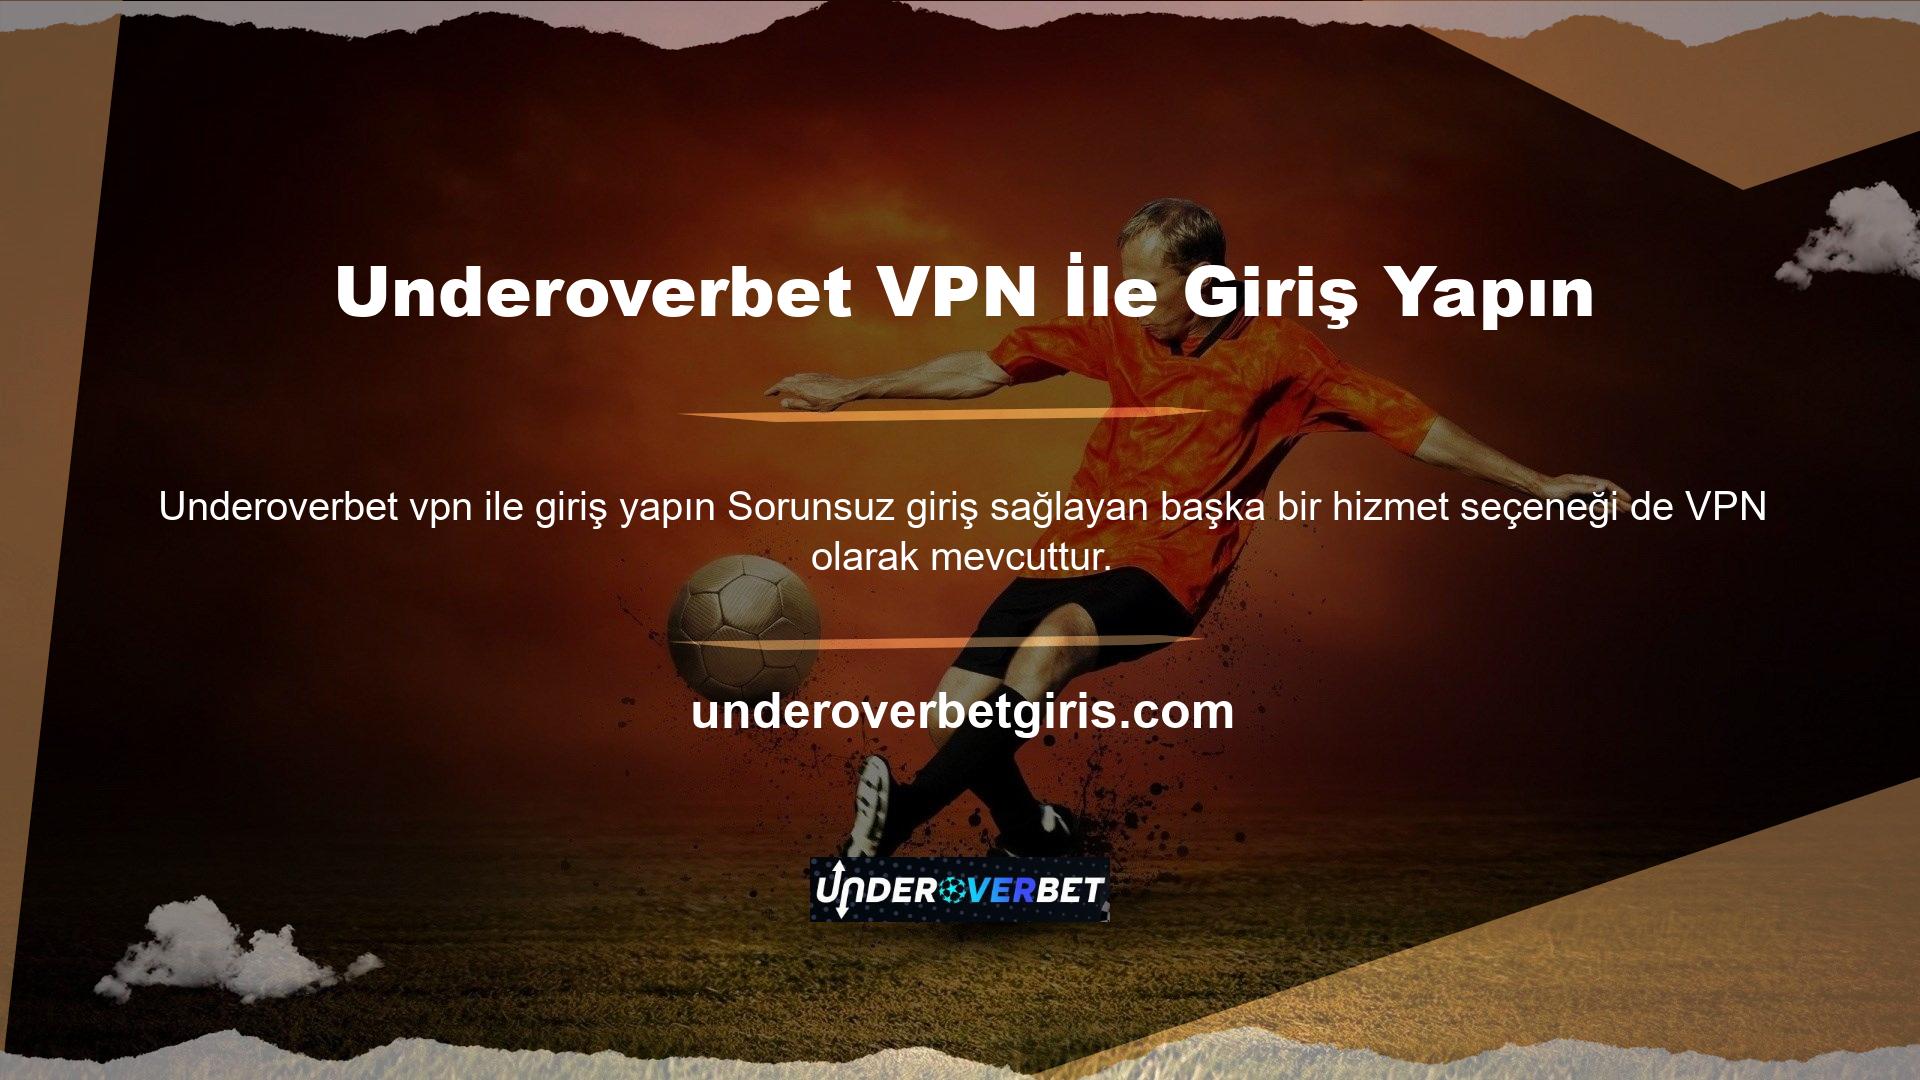 Underoverbet VPN, oturum açma sorunları yaşamamak için kullanılabilir